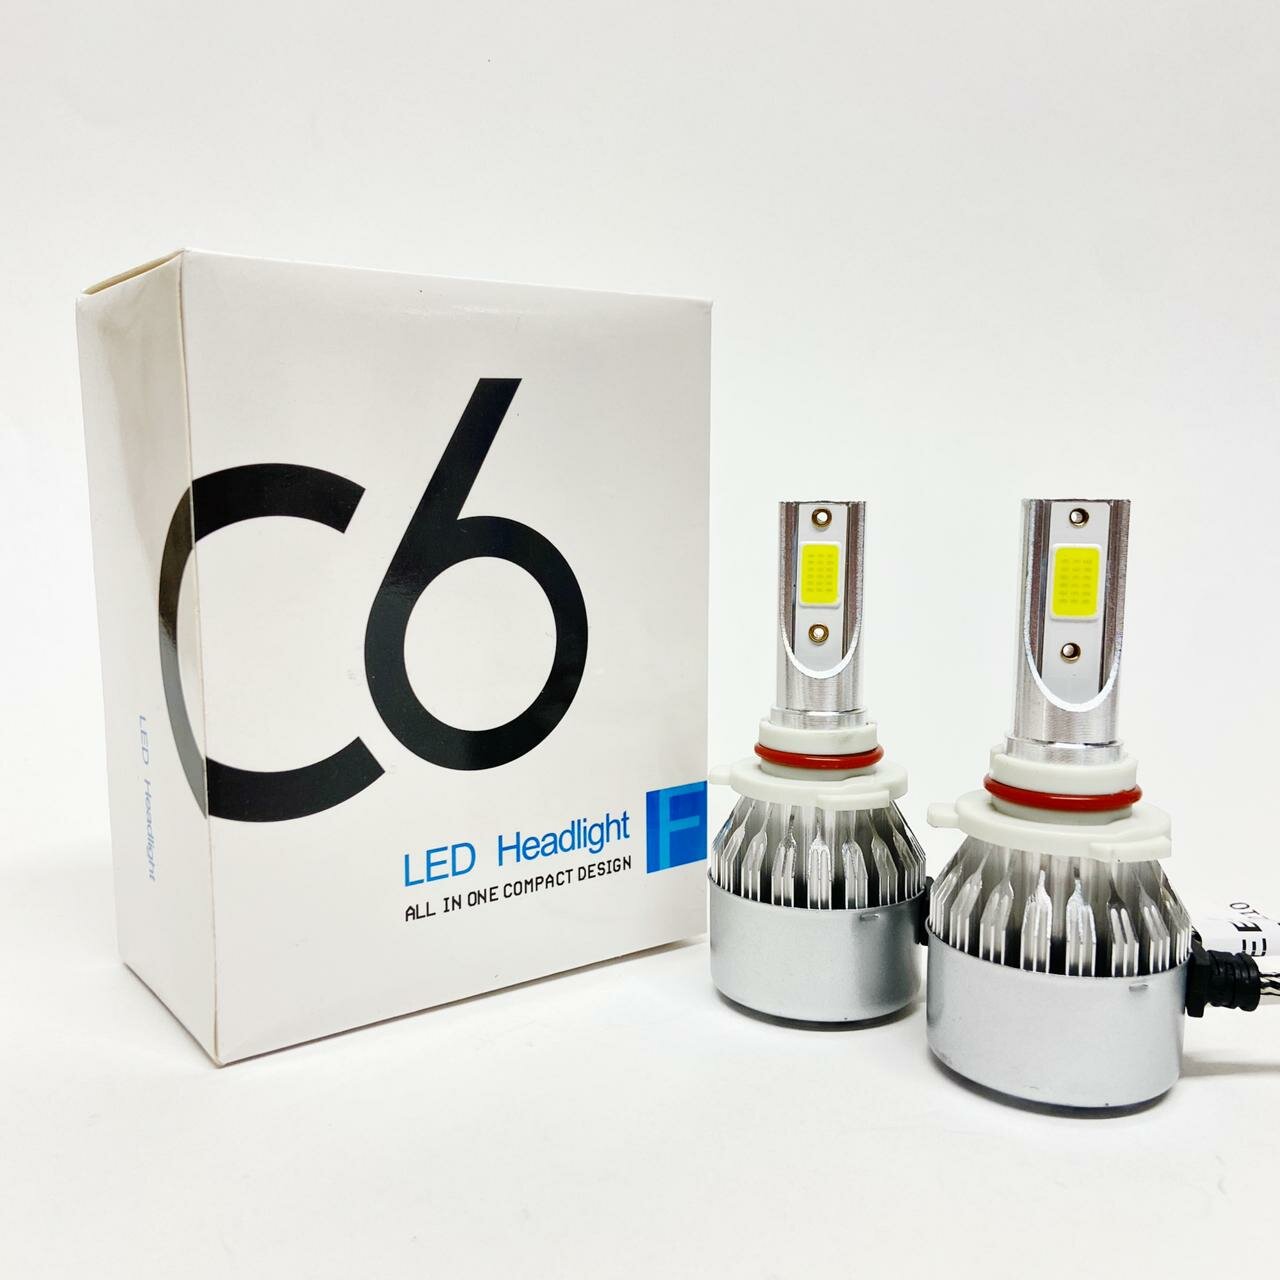 Светодиодные лампы Led C6 HB3 6000k, 36w, 12V, комплект 2 шт.